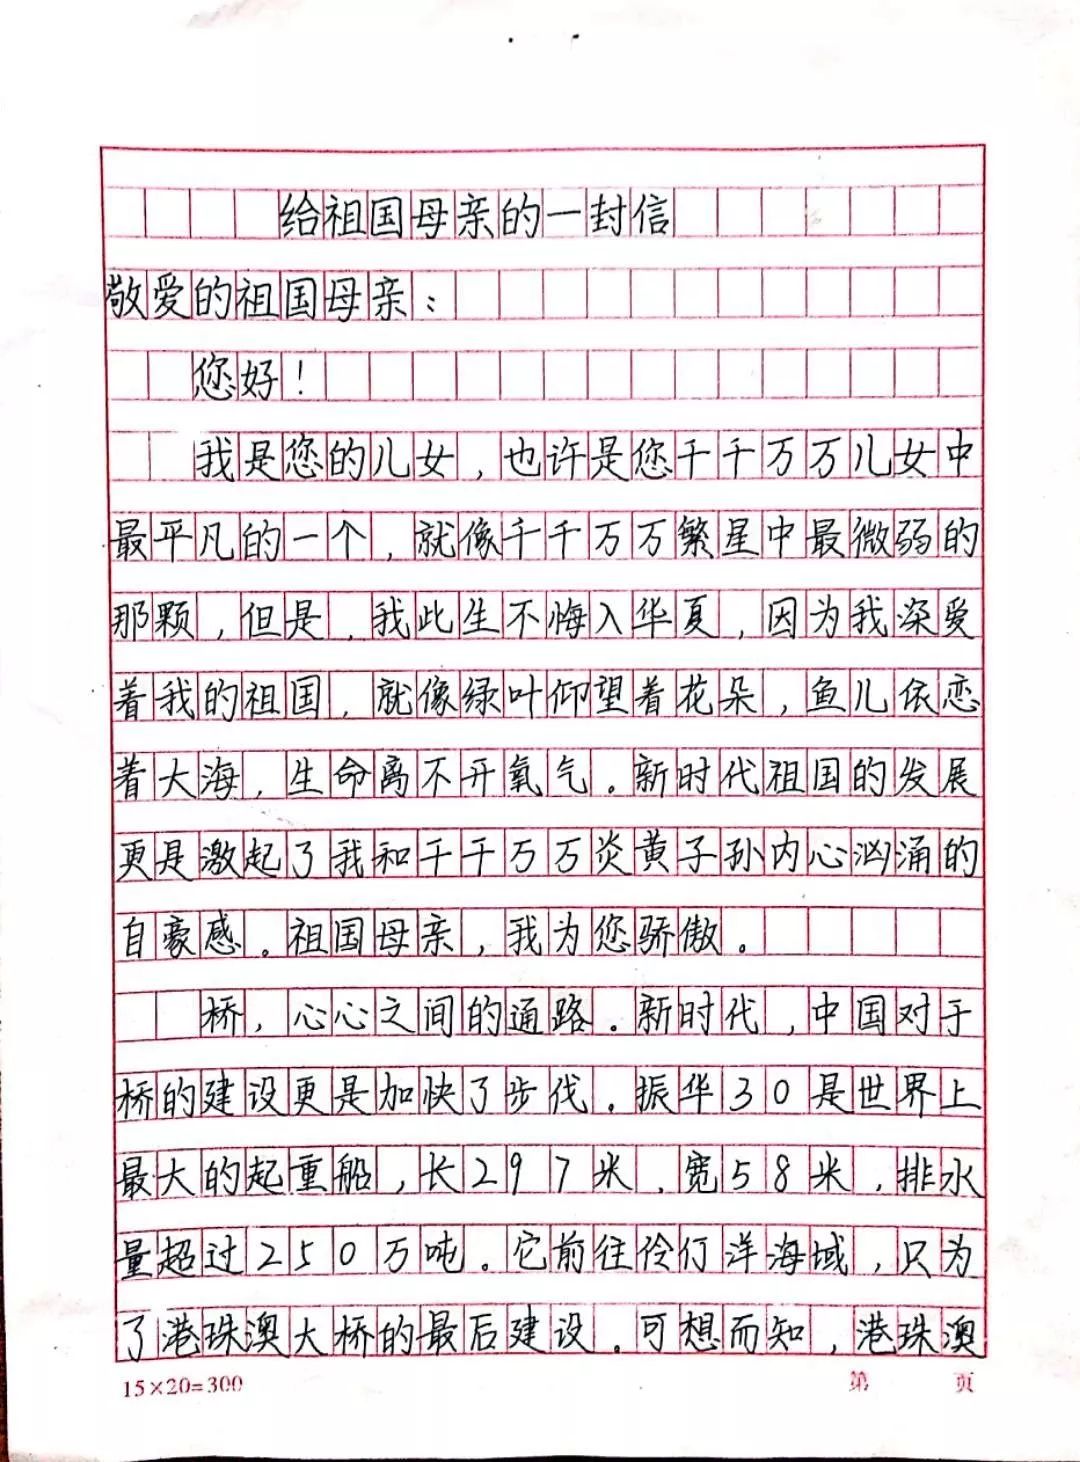 指导老师 王成香沂水县高桥镇初中7(2)班 刘嘉媛给祖国母亲的一封信